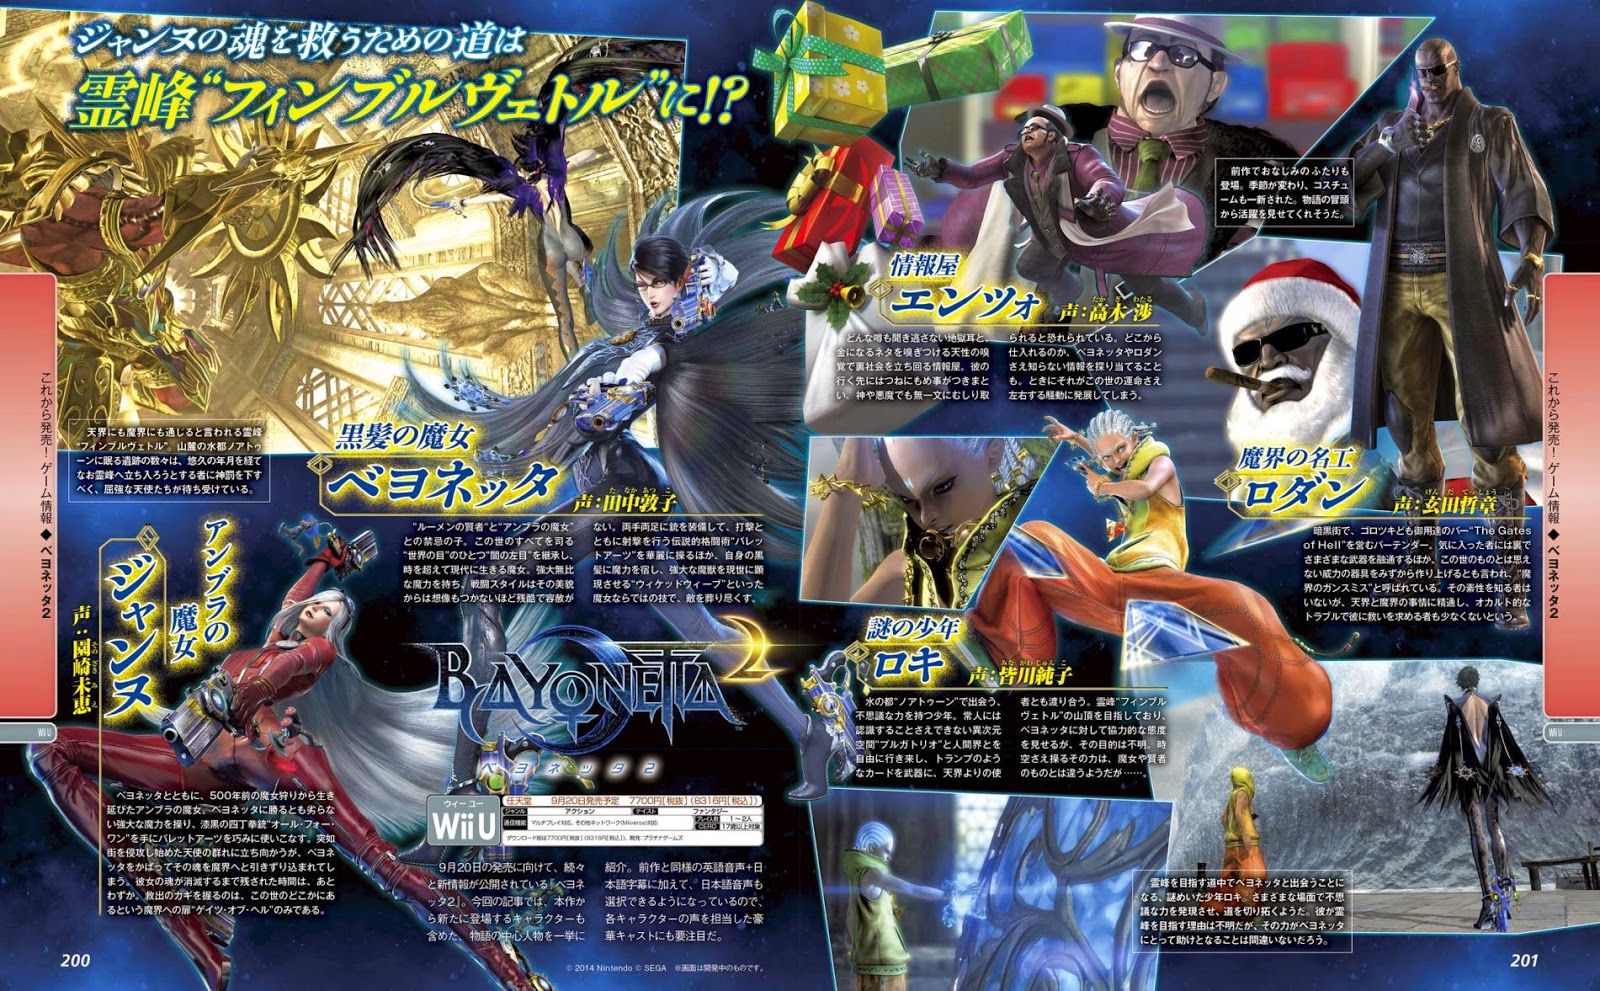 Publicação japonesa traz novas imagens de Bayonetta 2 (Wii U) e Super Smash  Bros. (3DS/Wii U) - Nintendo Blast